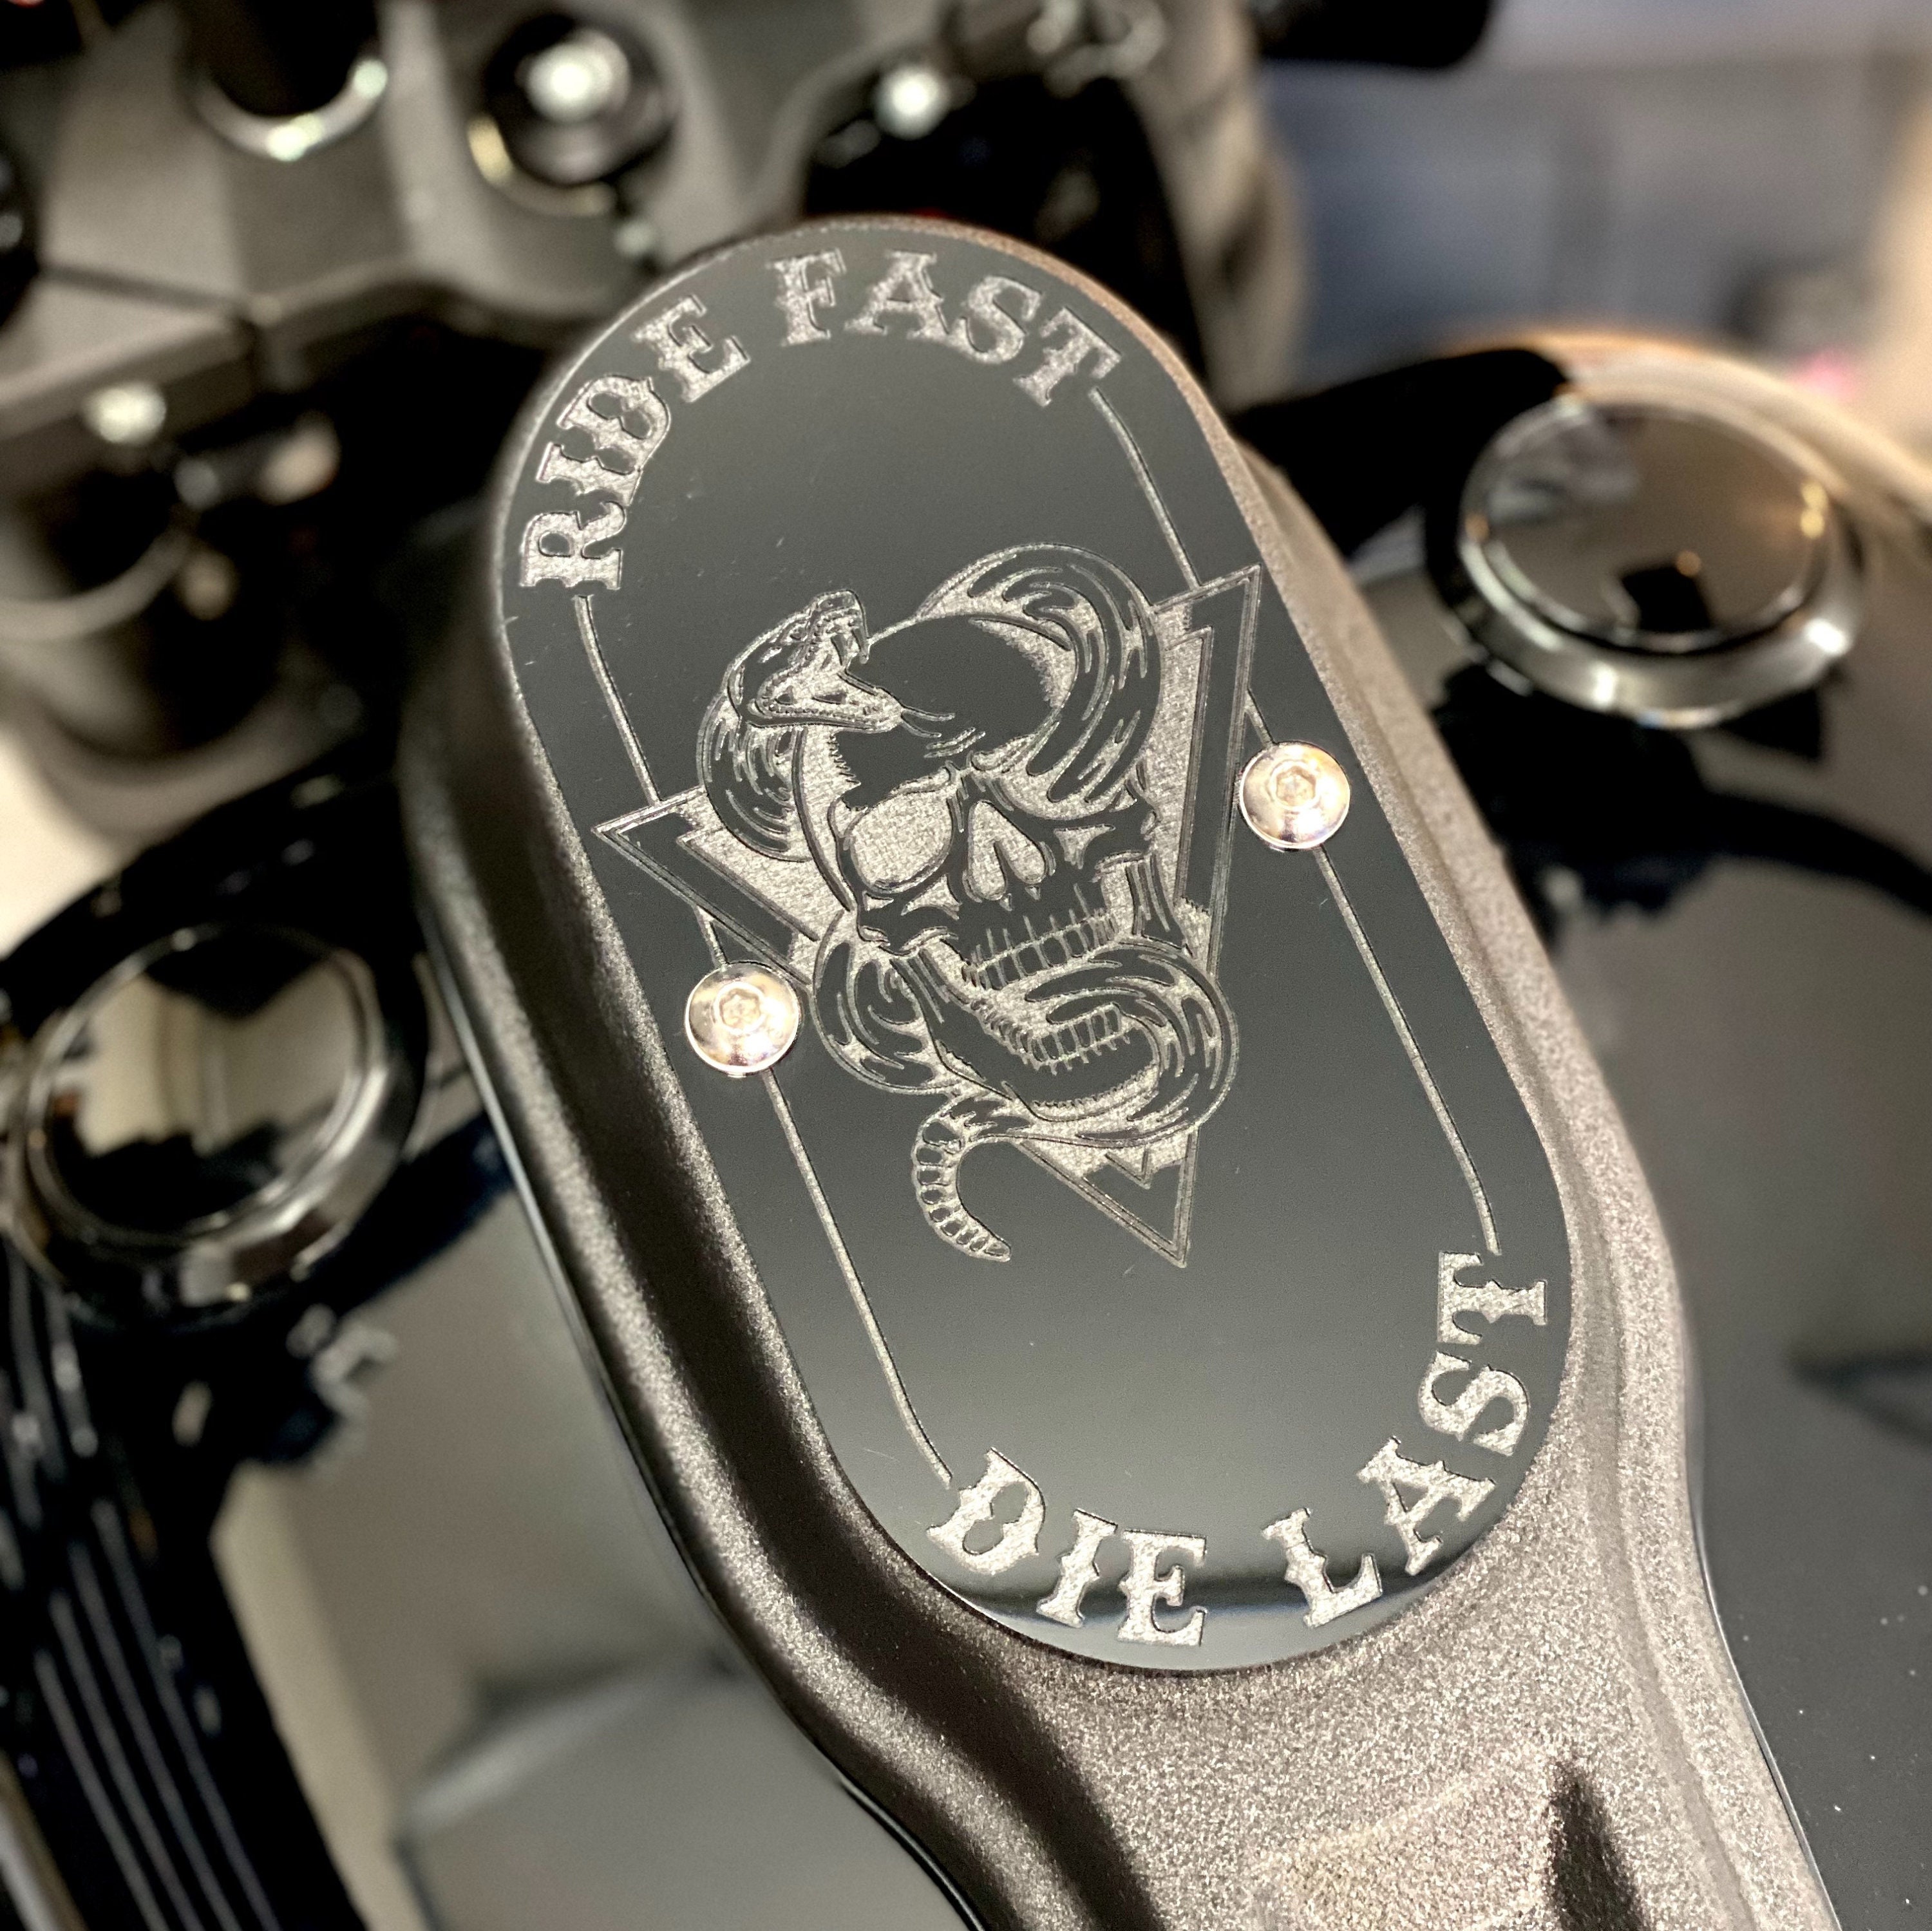 Achetez votre Housse pour indicateurs avec boulon M8, plastique noir, jeu  de 4 pièces. pour Harley Davidson ou moto custom.